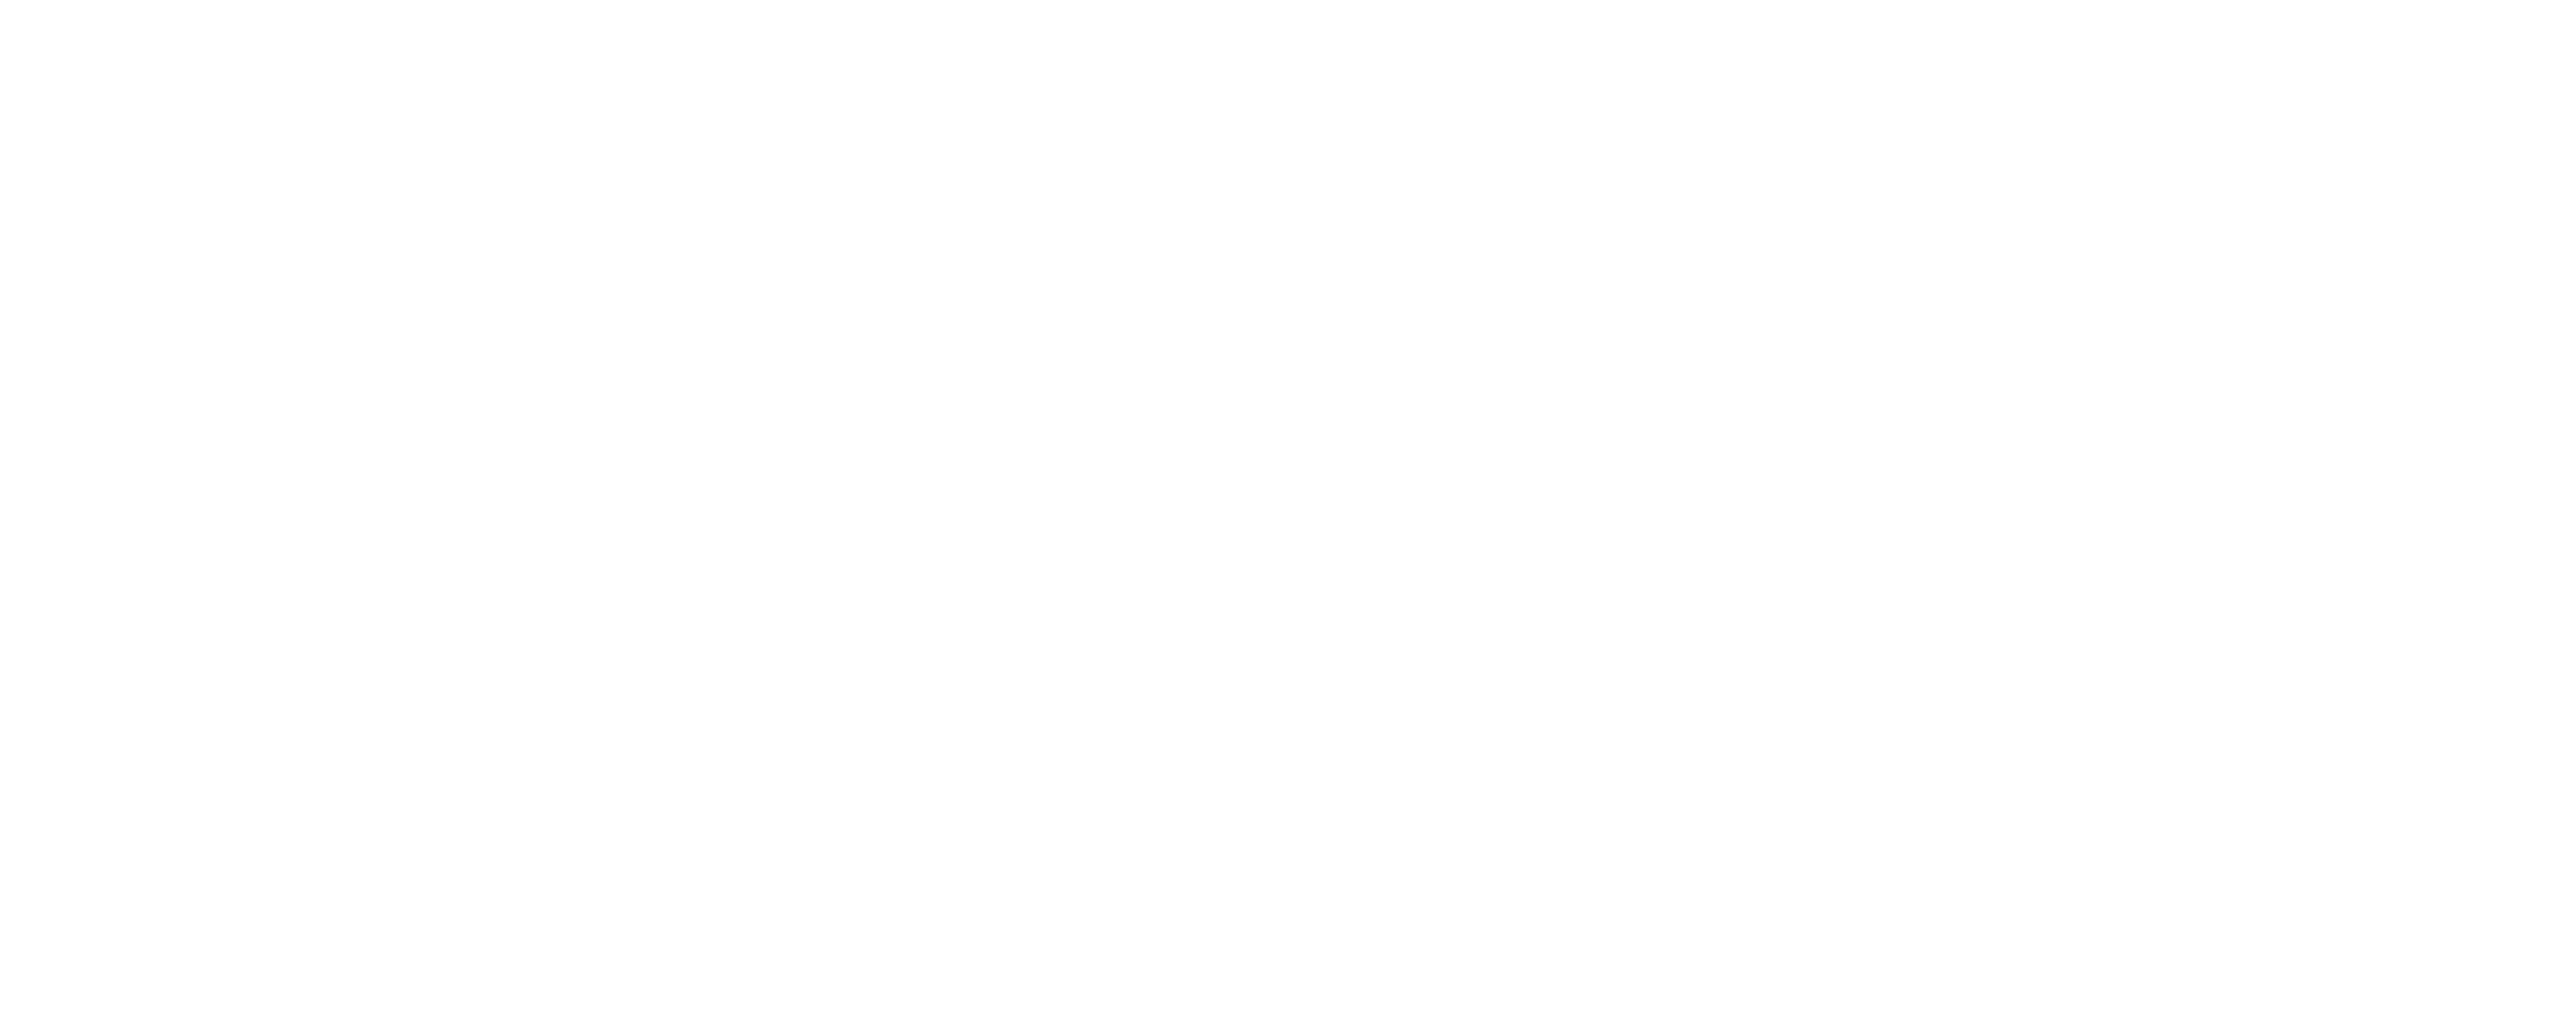 Fuerther Kaerwazeitung Logo weiss